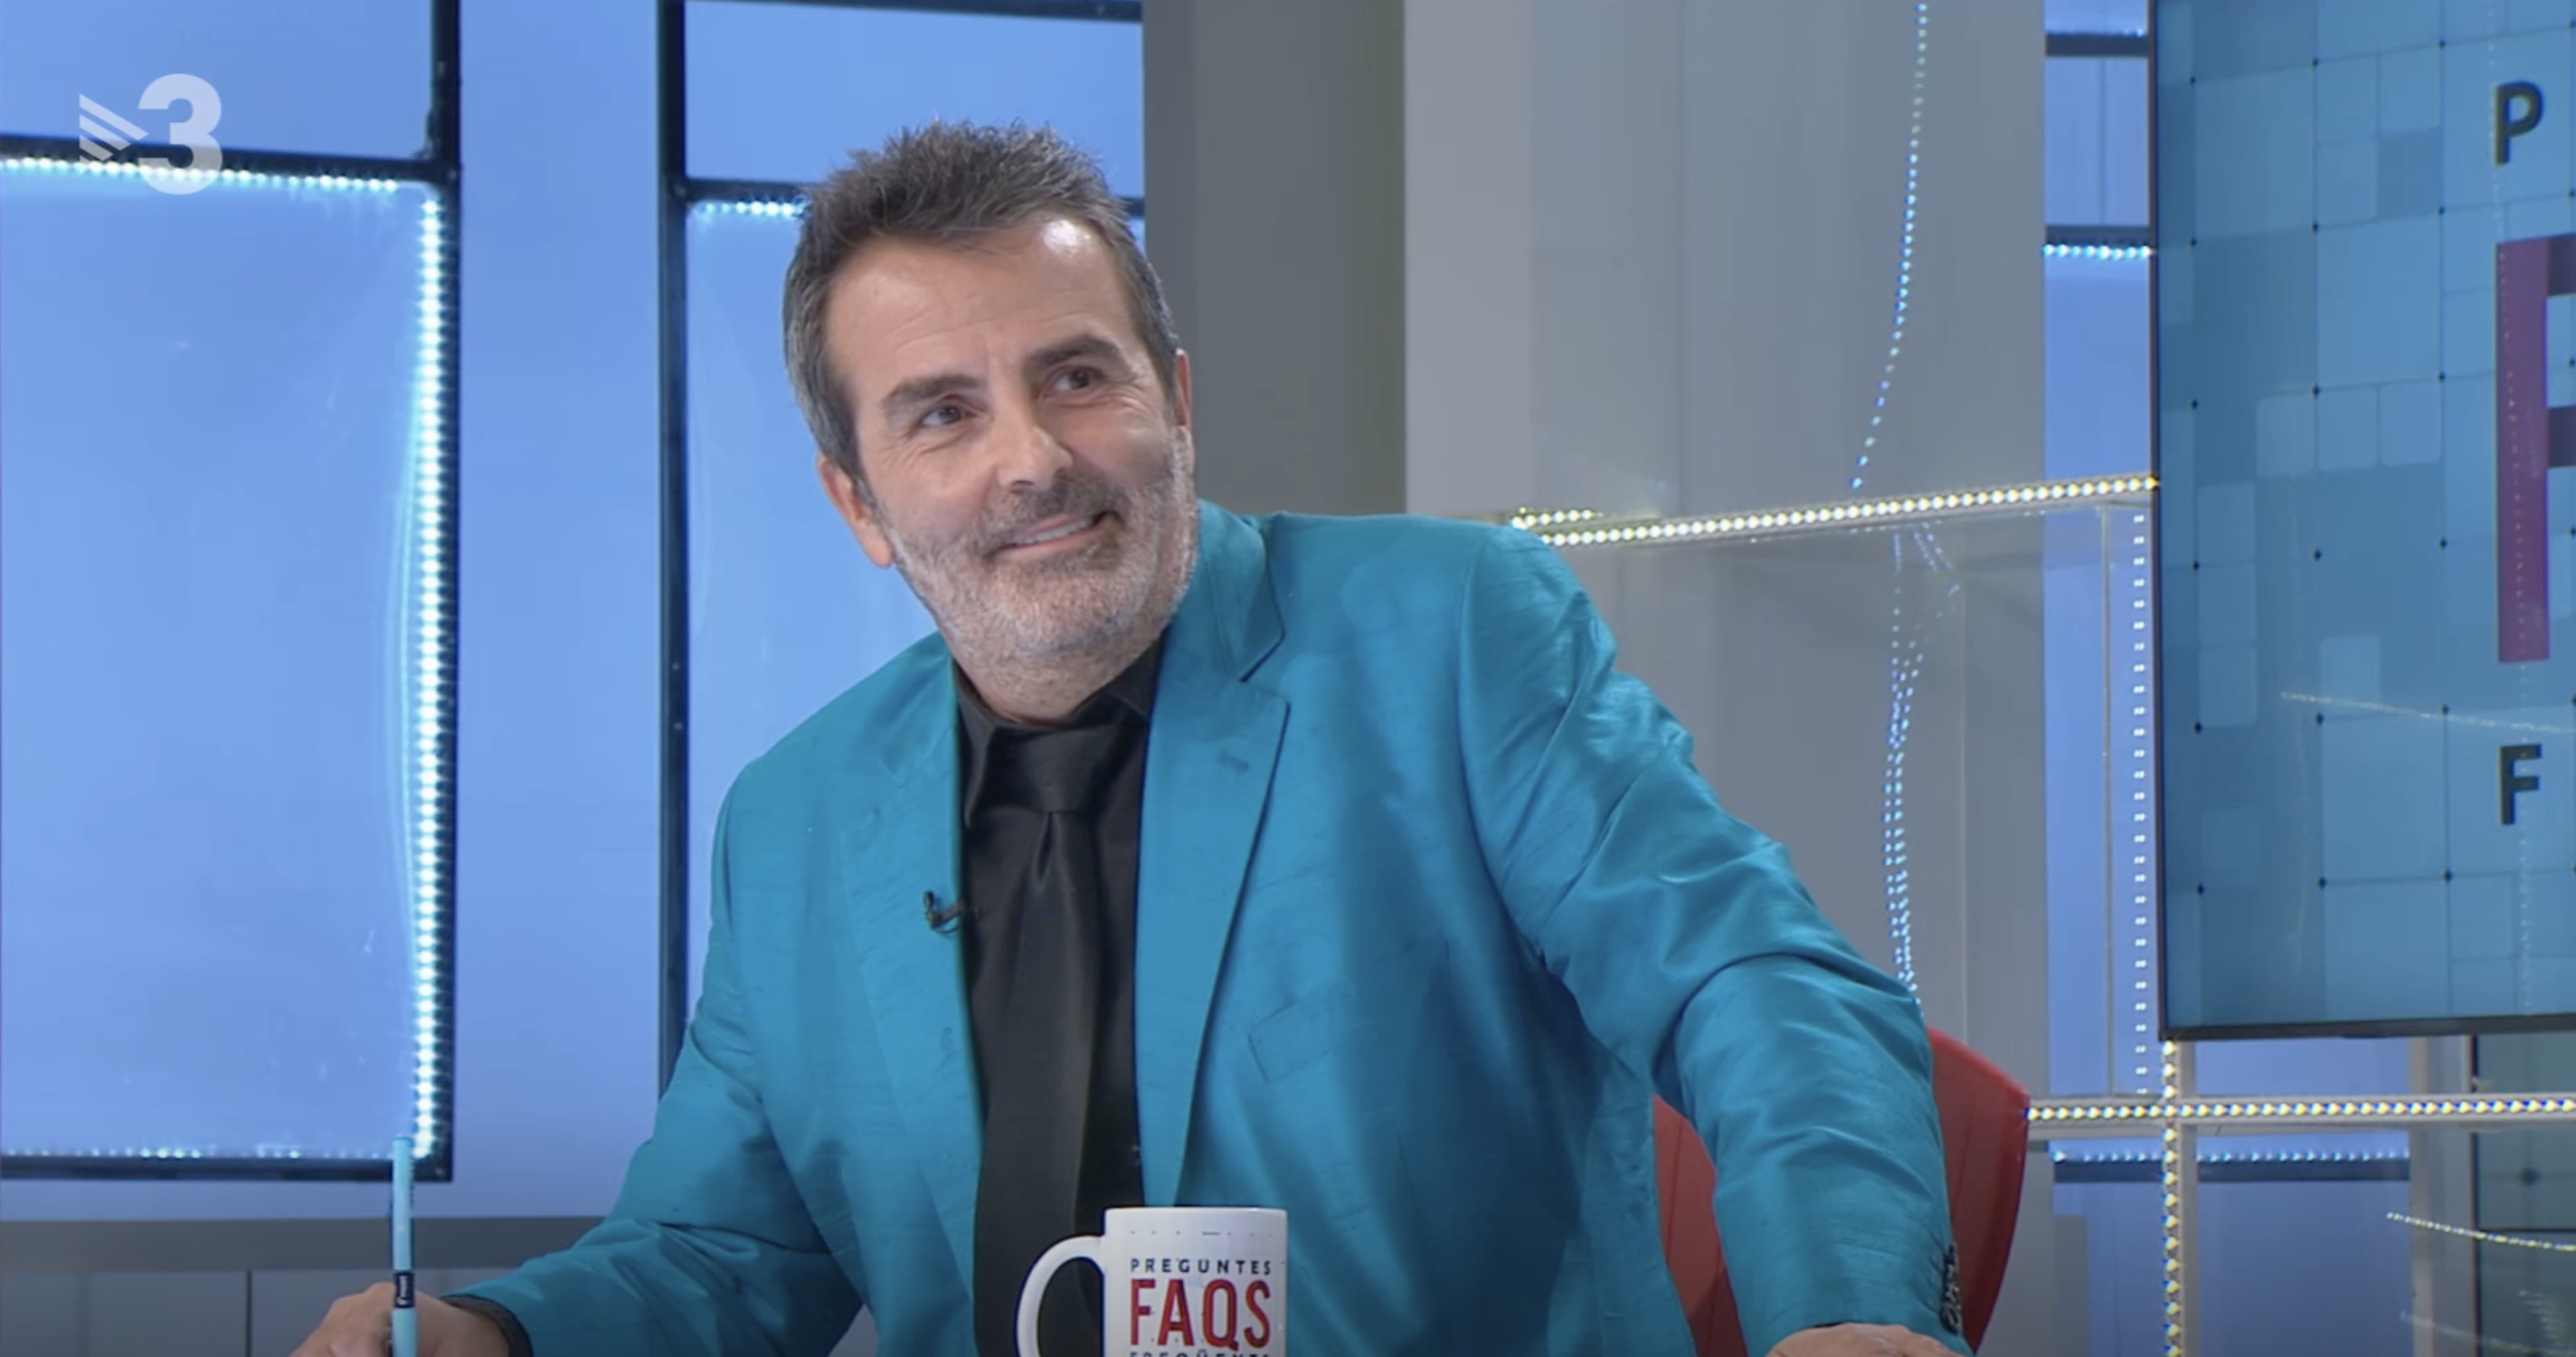 Sala-i-Martin es mofa de l'obsessió de Víctor Font amb Laporta